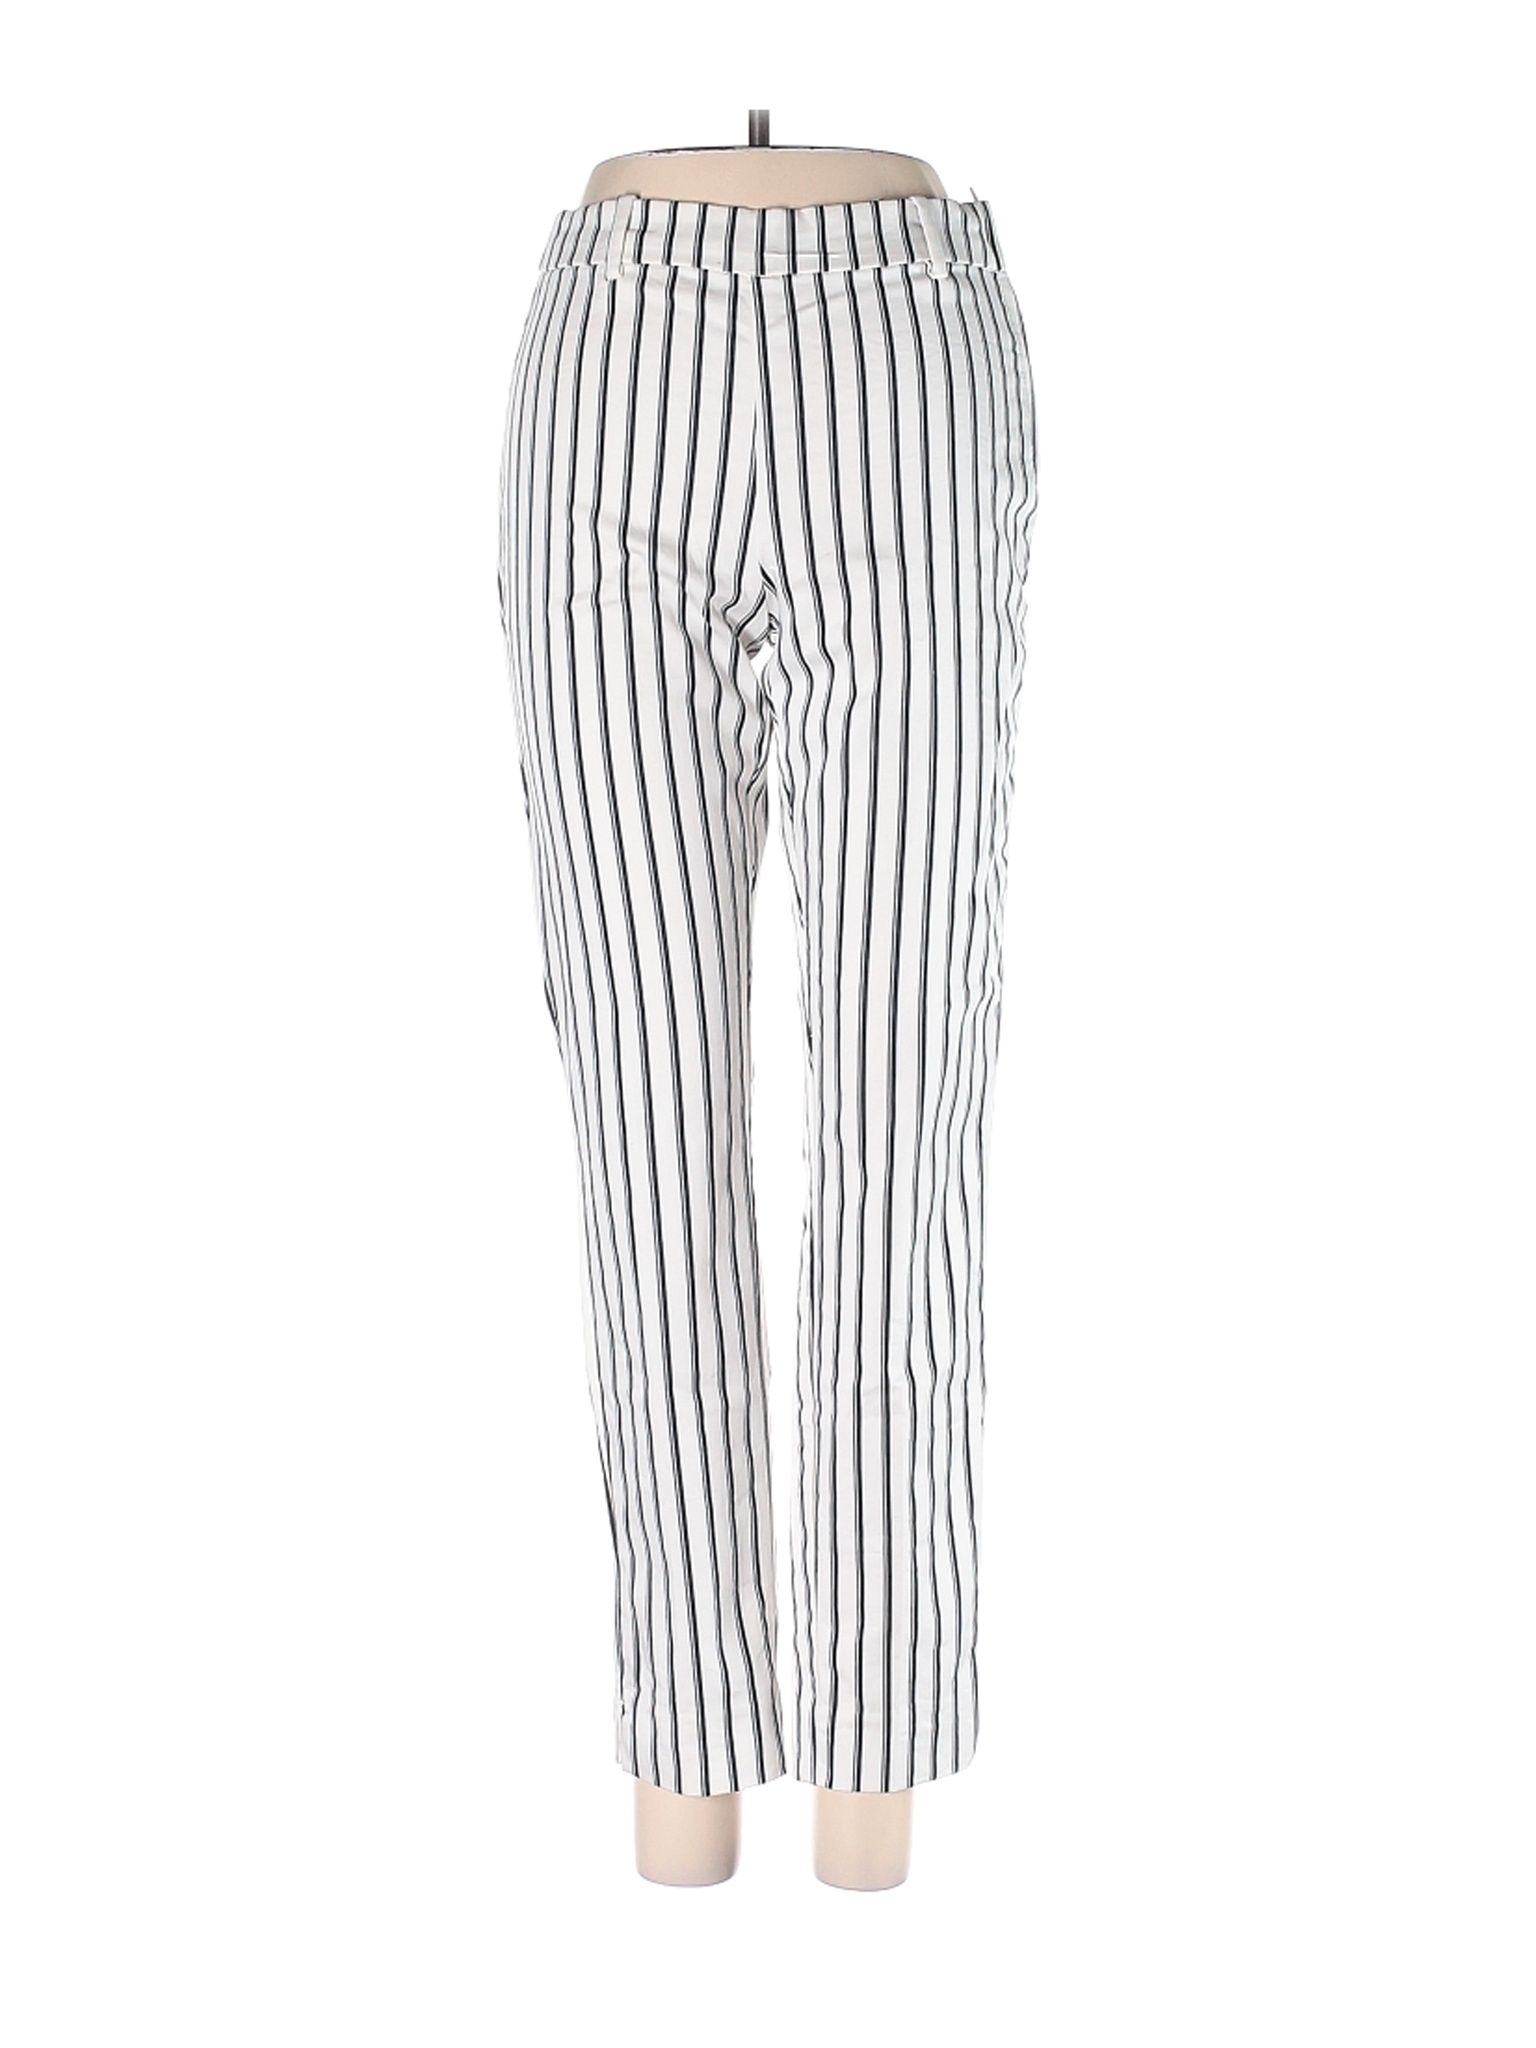 H&M Women White Casual Pants 4 | eBay